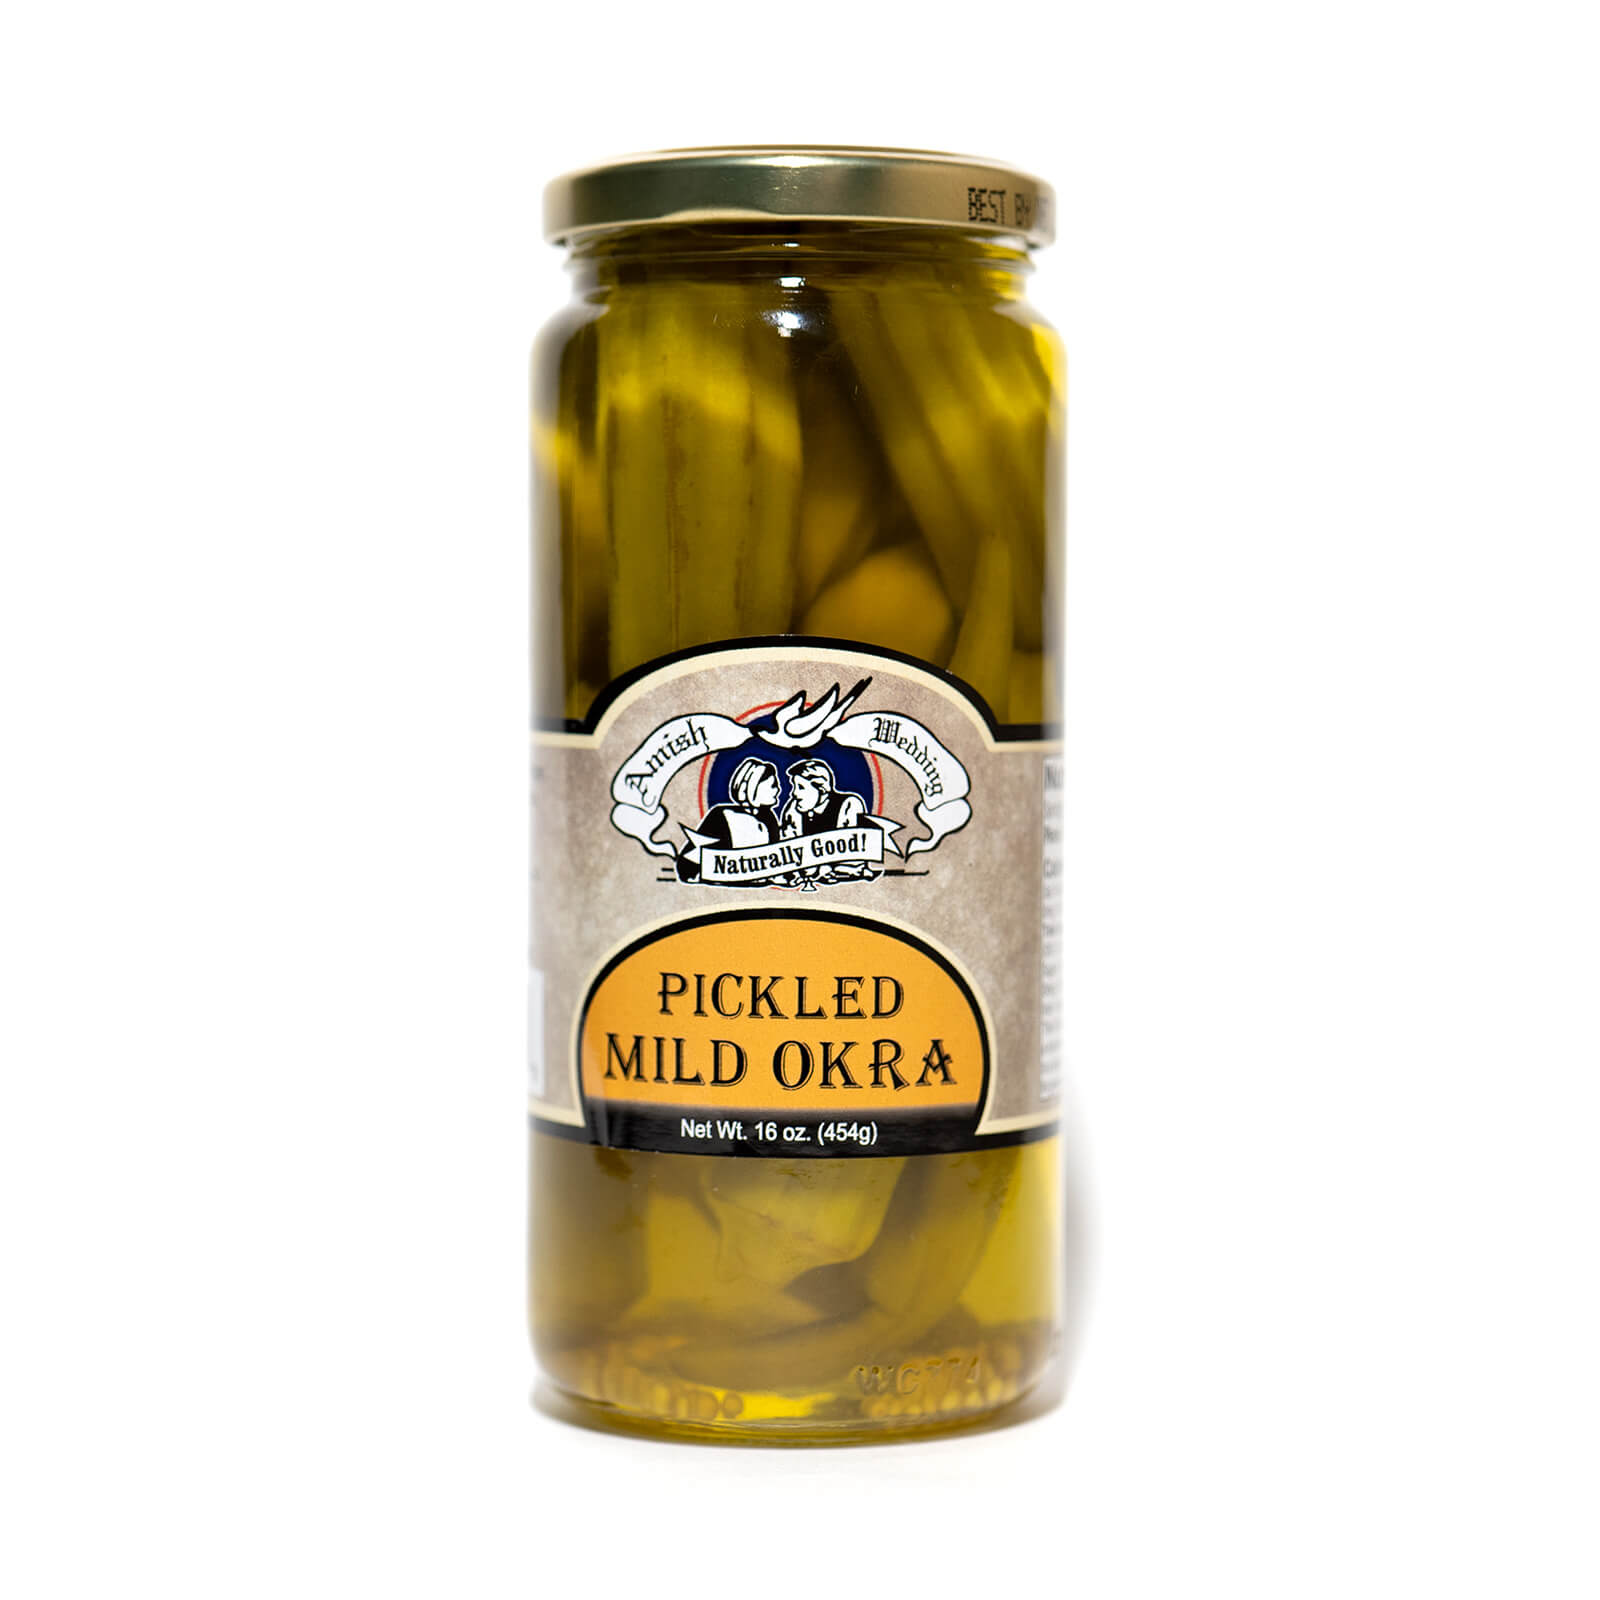 Pickled Mild Okra - Amish Wedding - Single Jar - Front Label